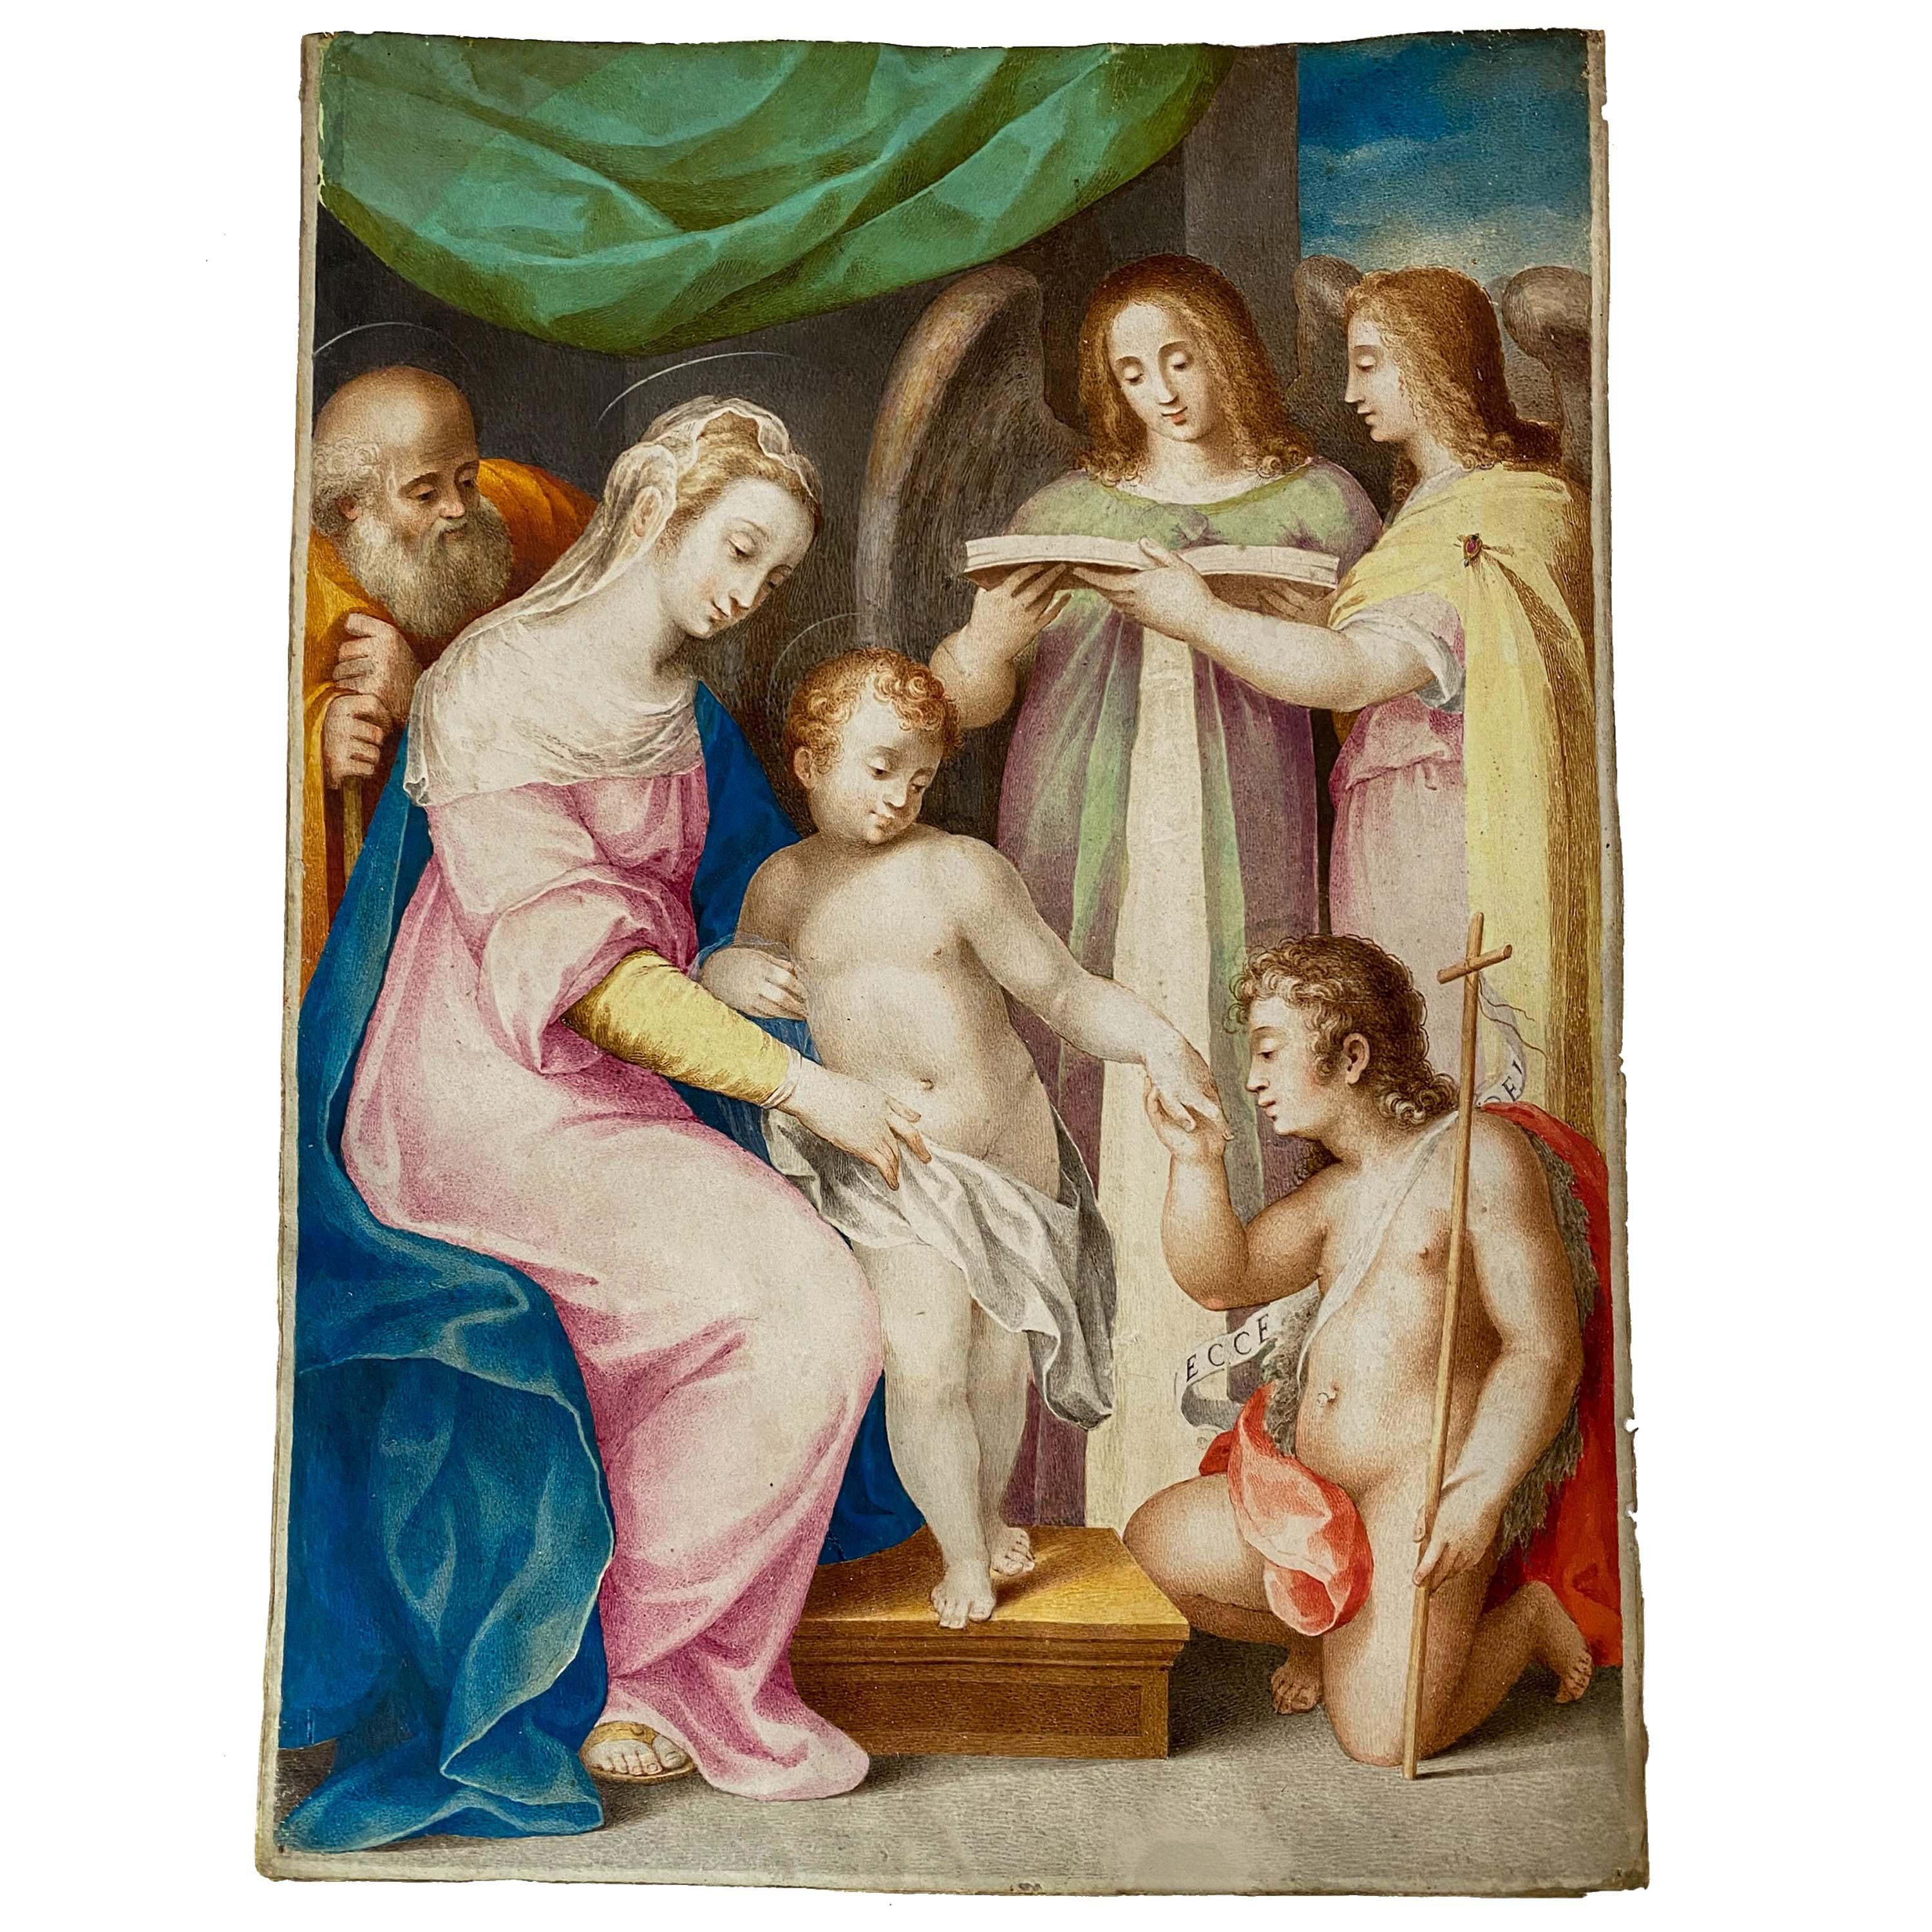 Rare et importante peinture à la détrempe sur parchemin de la Renaissance italienne, Giuseppe Cesari Il Cavalier d'Arpino (Giuseppe Cesari, 1568-1640), peinture datant d'environ 1595.
Caesari est né à Rome en 1568 et sa famille était originaire